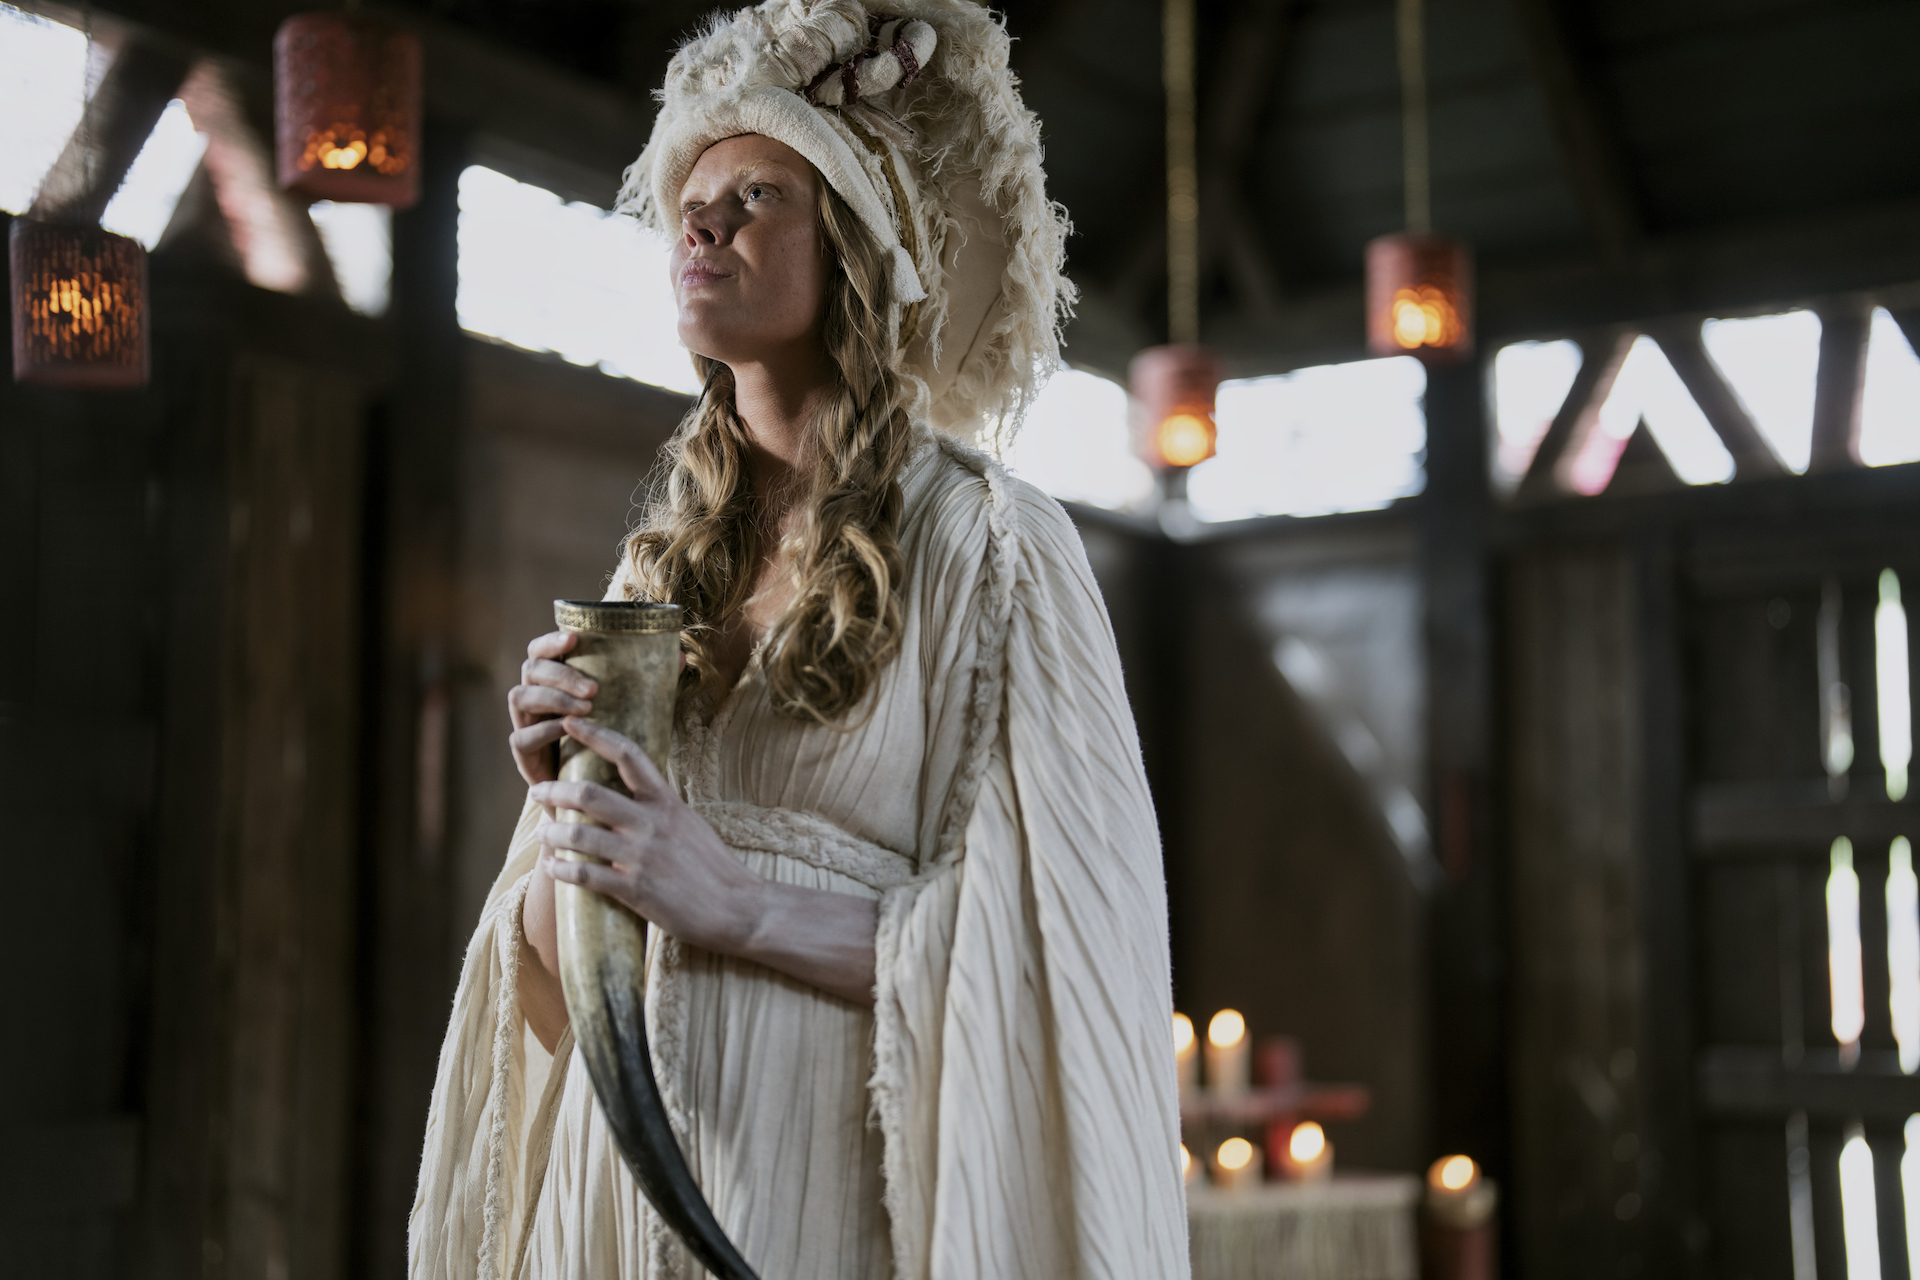 Season 2 of Vikings: Valhalla premieres January 12 on Netflix